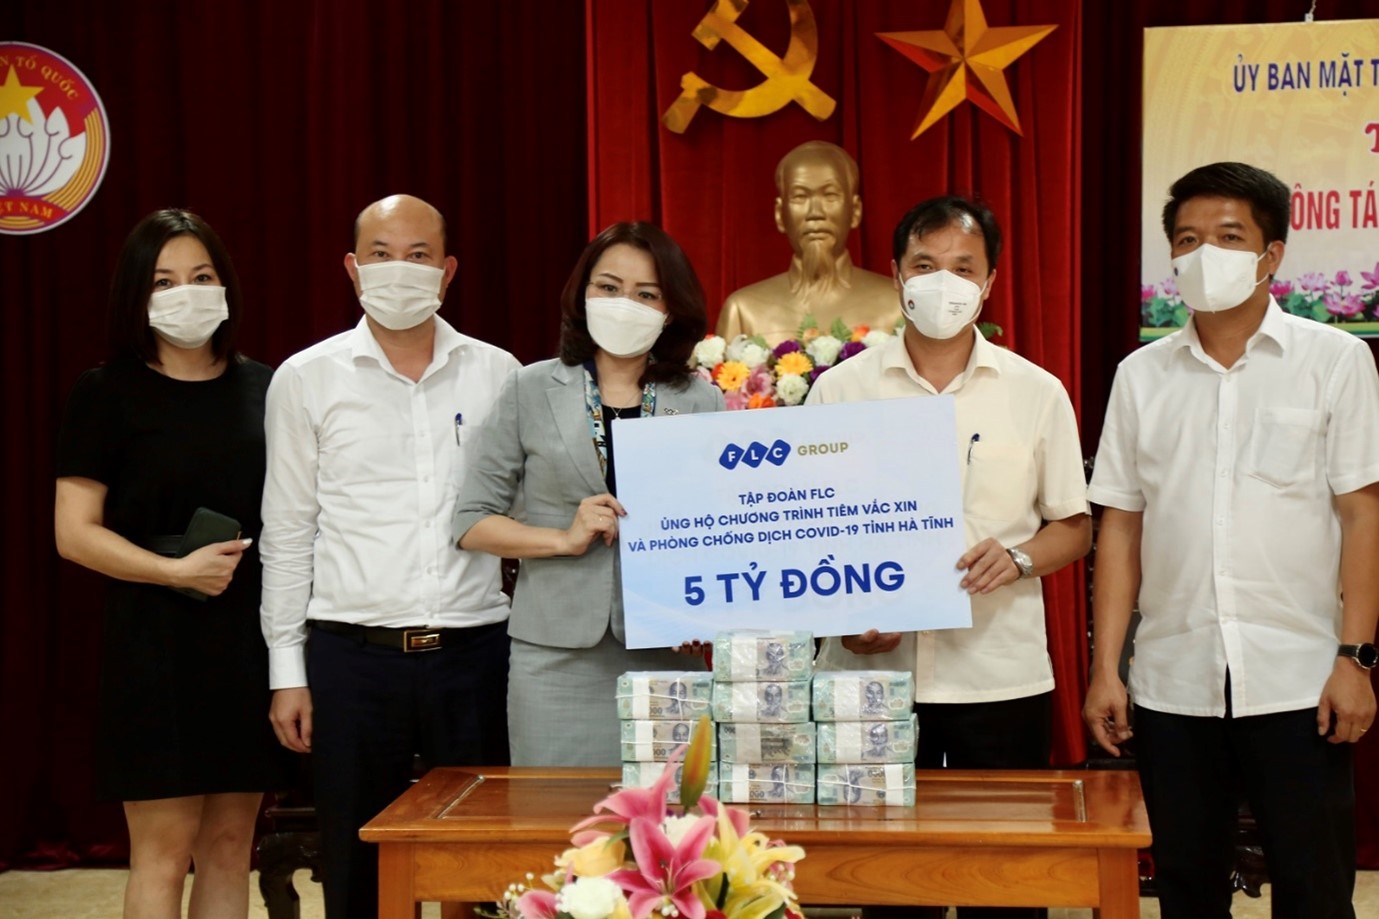 Chung tay chống dịch Covid-19, FLC ủng hộ Hà Tĩnh 5 tỉ đồng